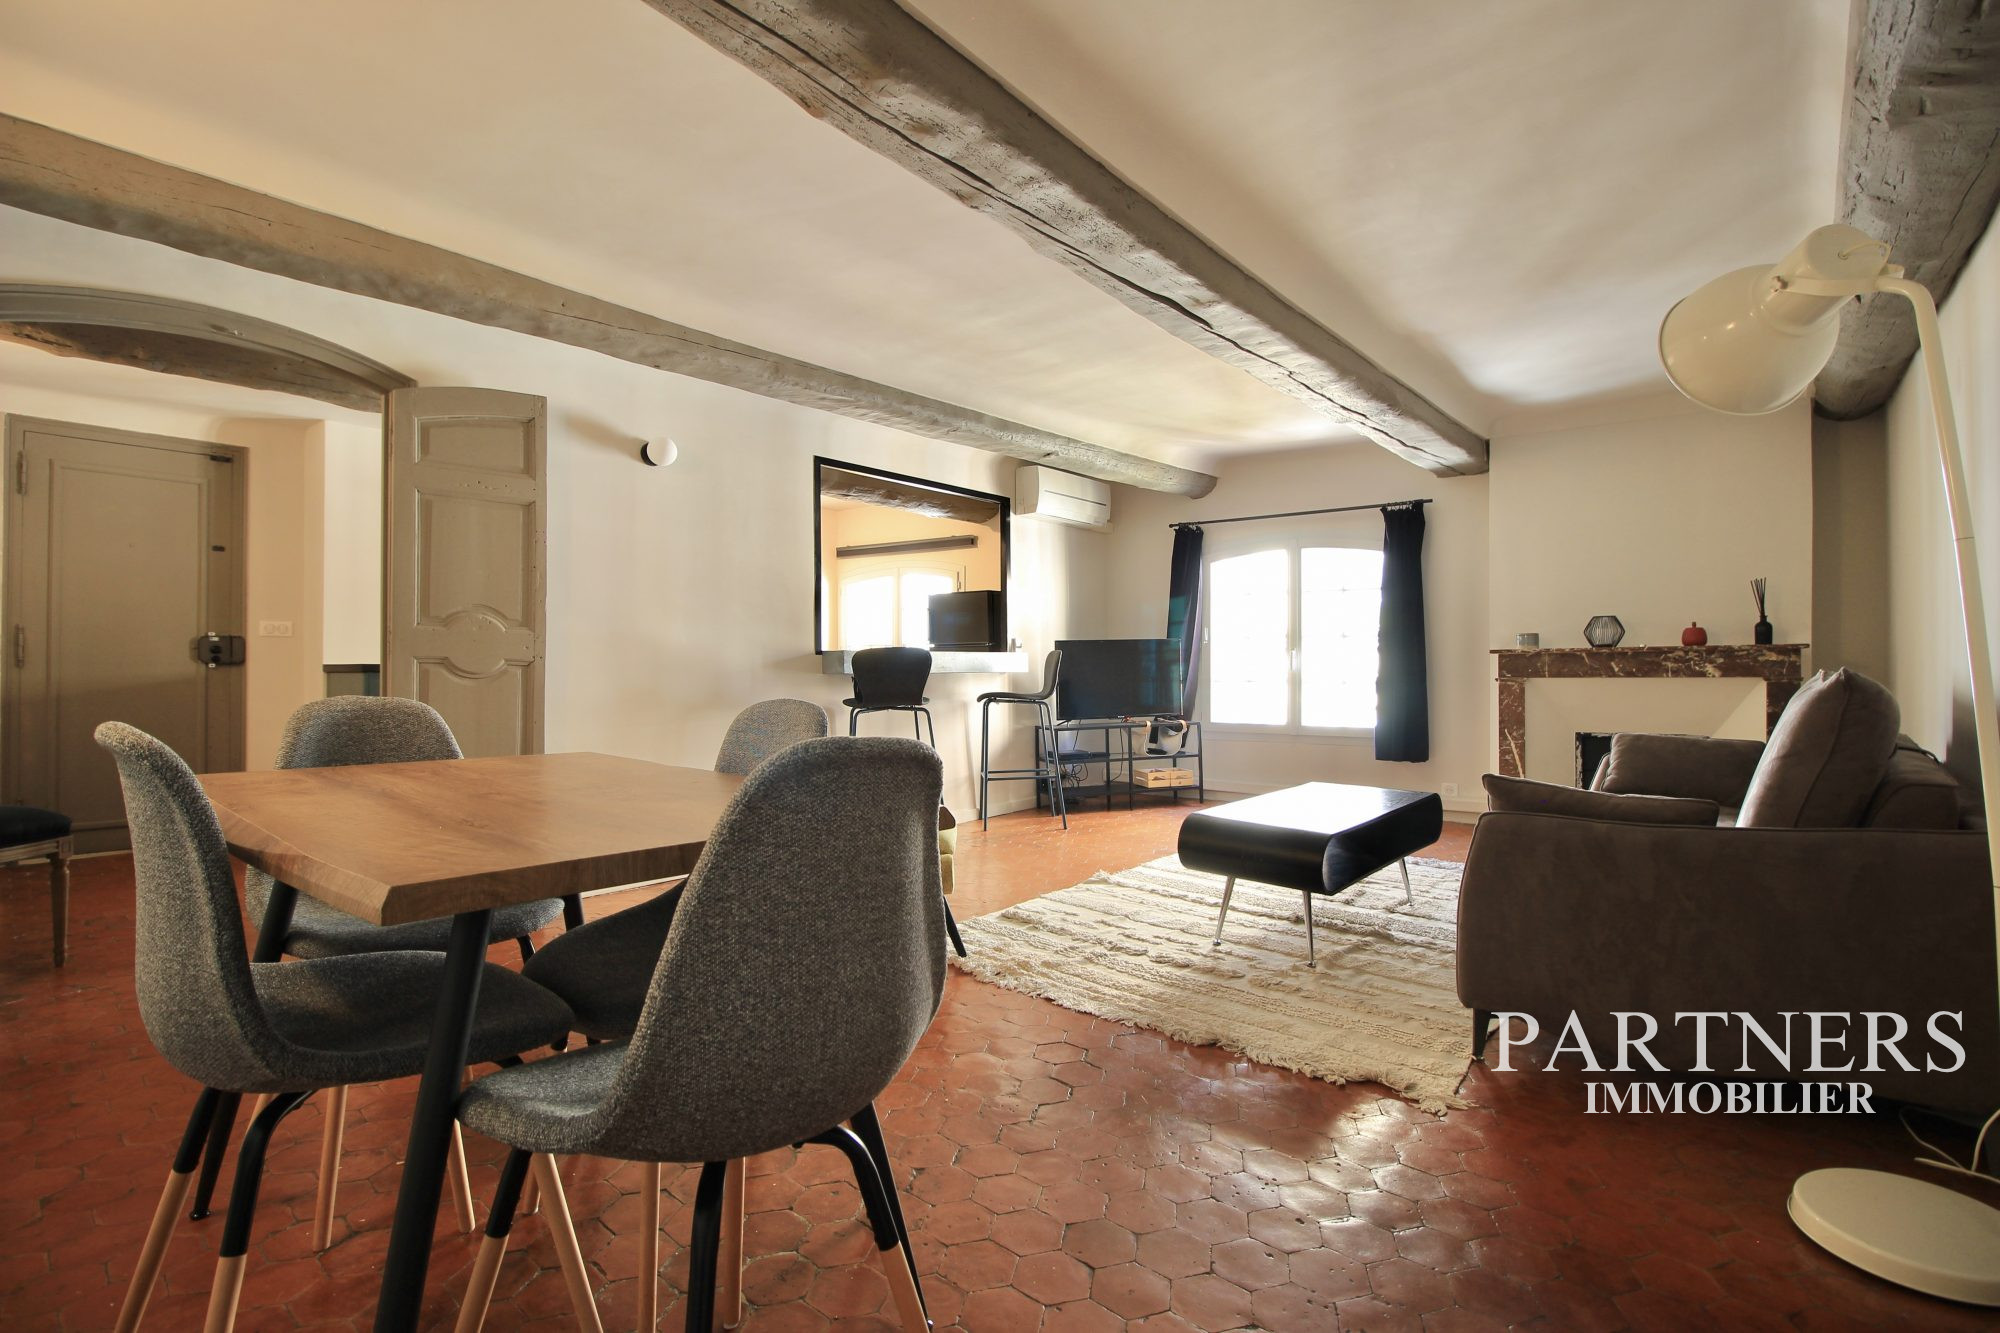 Vente Appartement 70m² 2 Pièces à Aix en Provence (13540) - Partners Immobilier